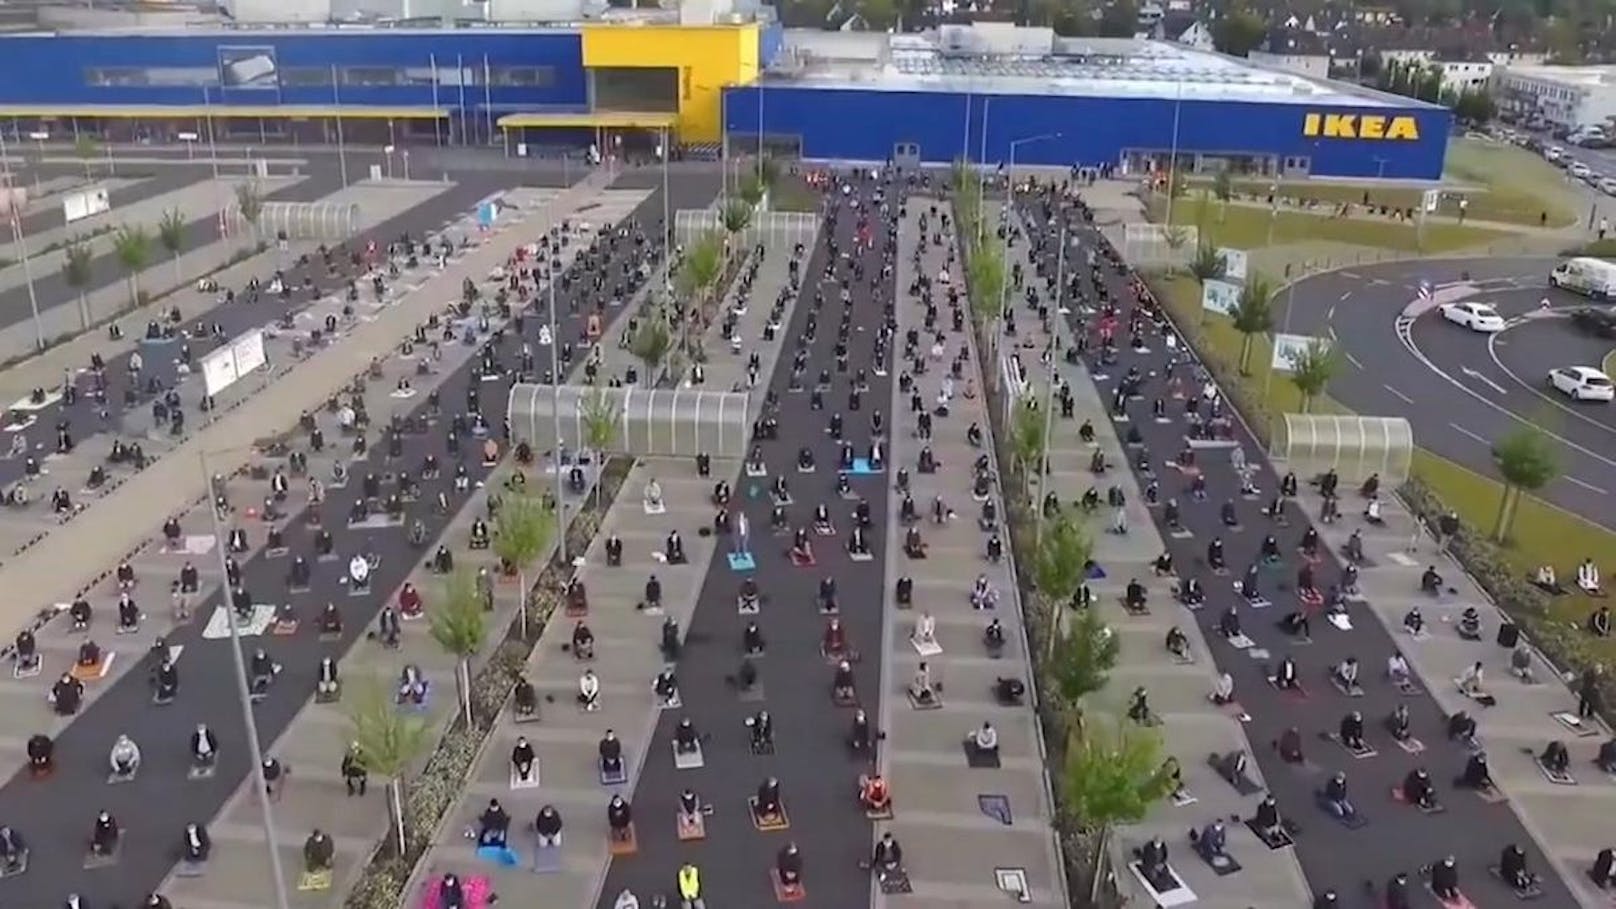 Gläubige versammelten sich auf einem Ikea-Parkplatz in Deutschland zum Gebet.